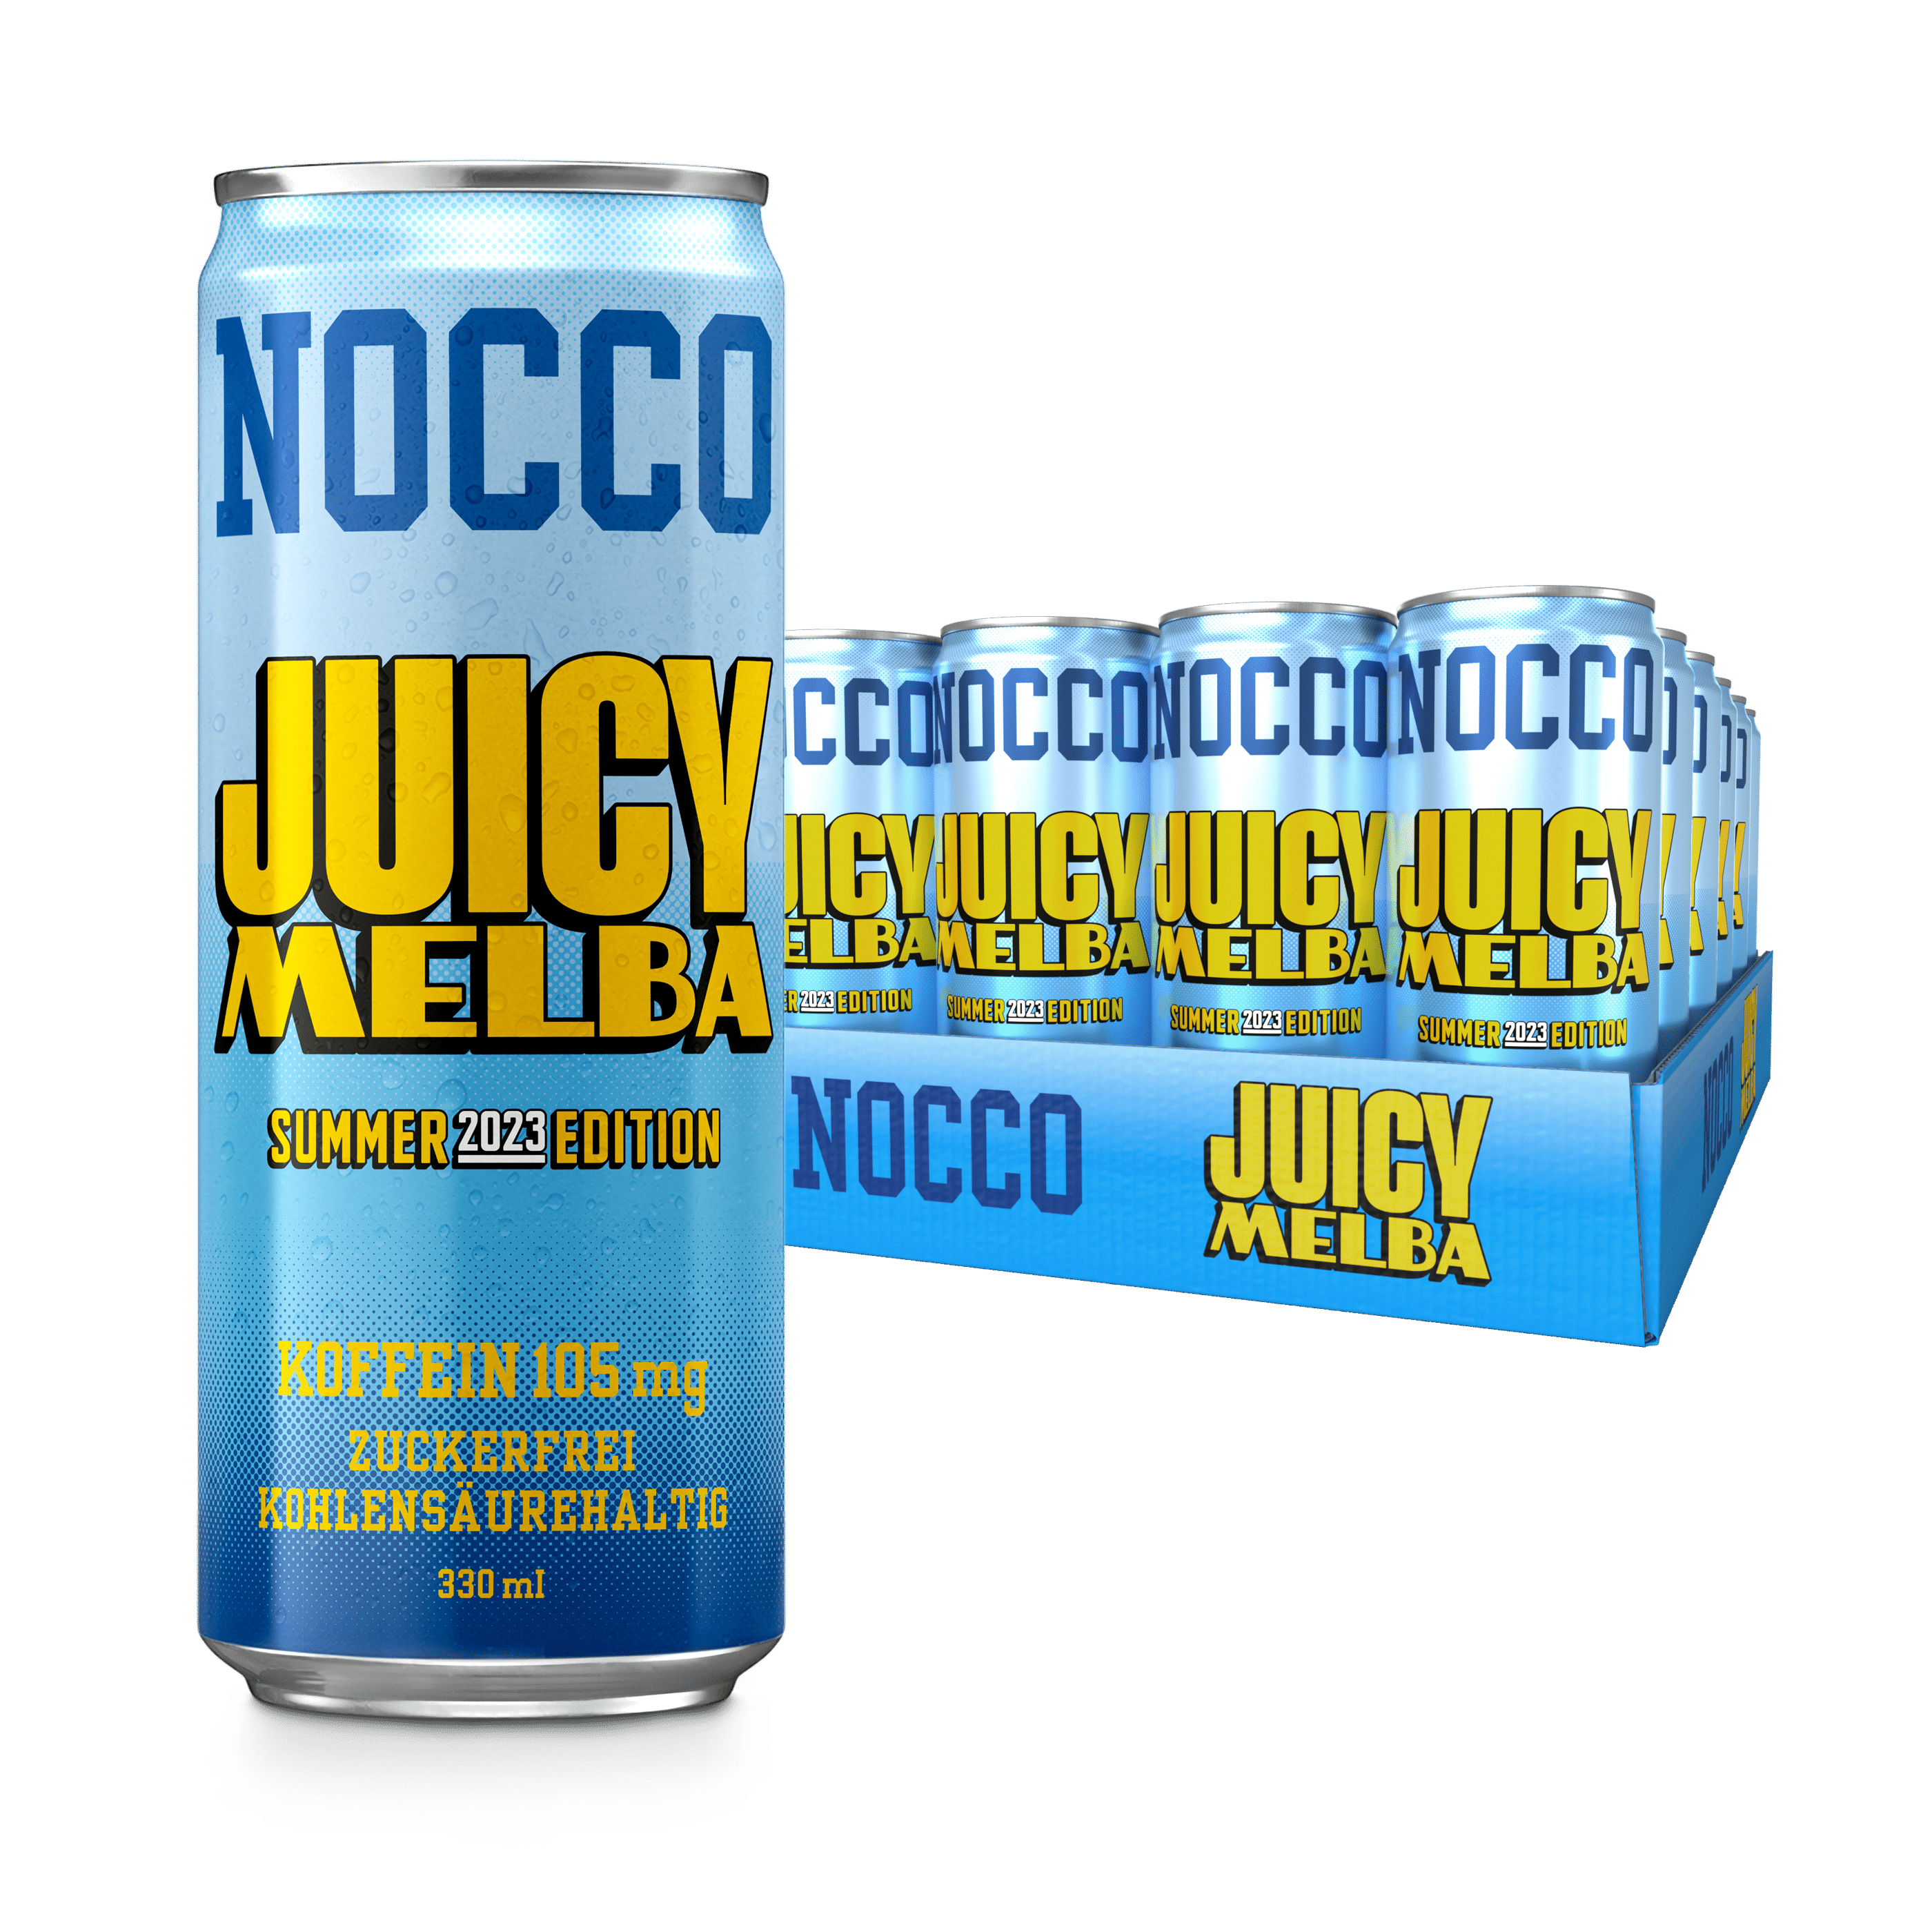 Nocco Juicy Melba 24-pack